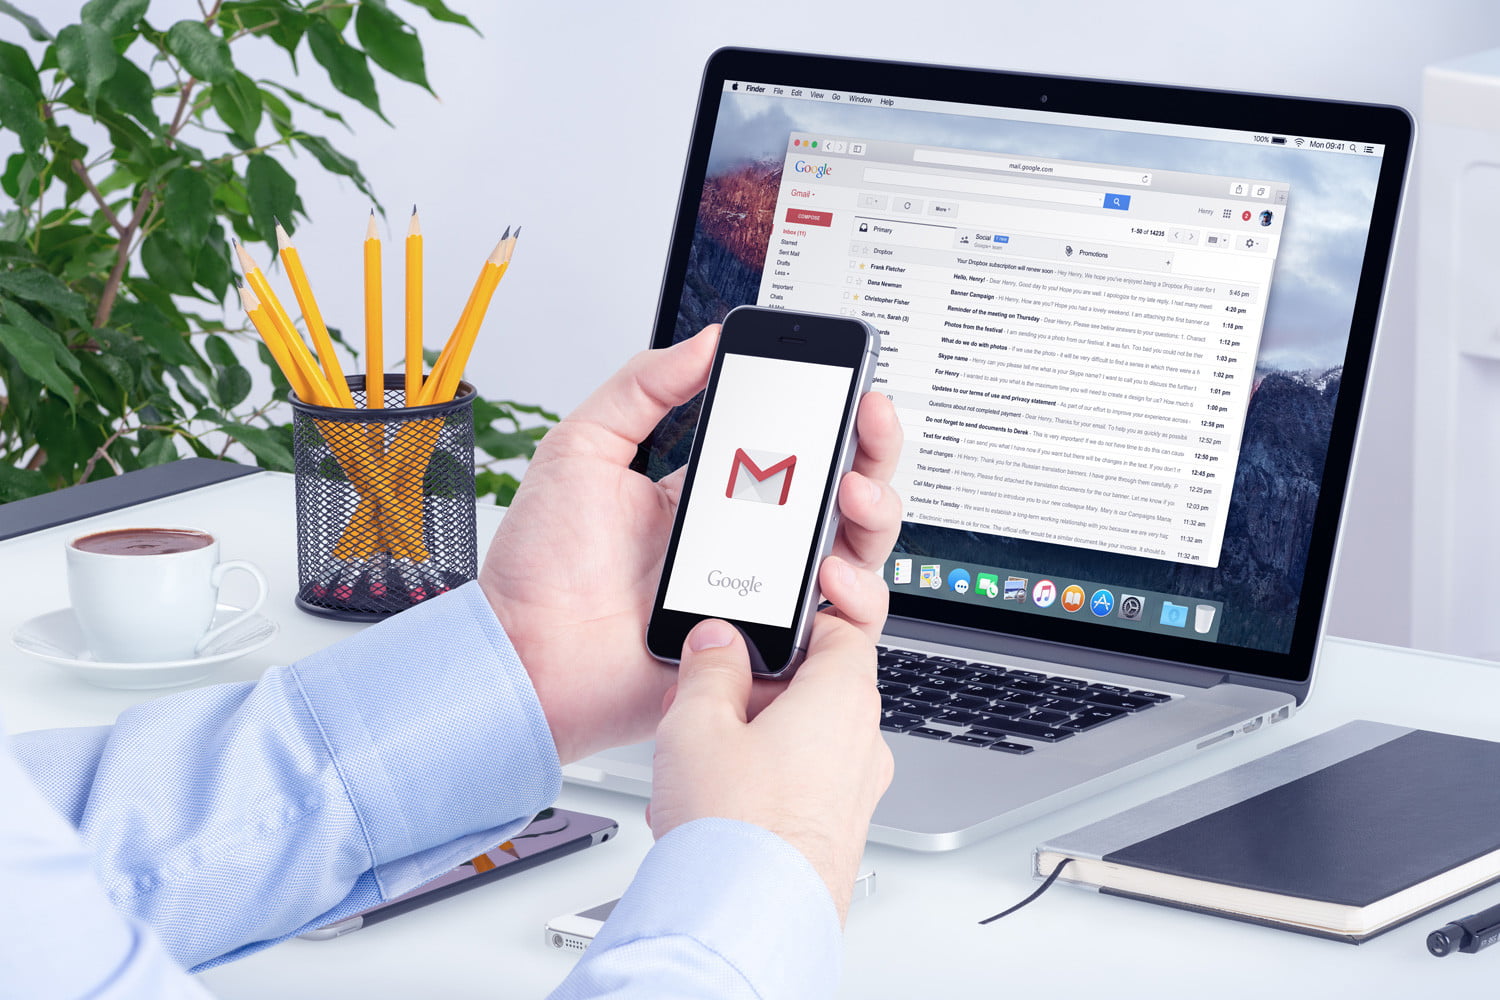 Gmail'in iOS versiyonu yeni özelliklerle güncellendi